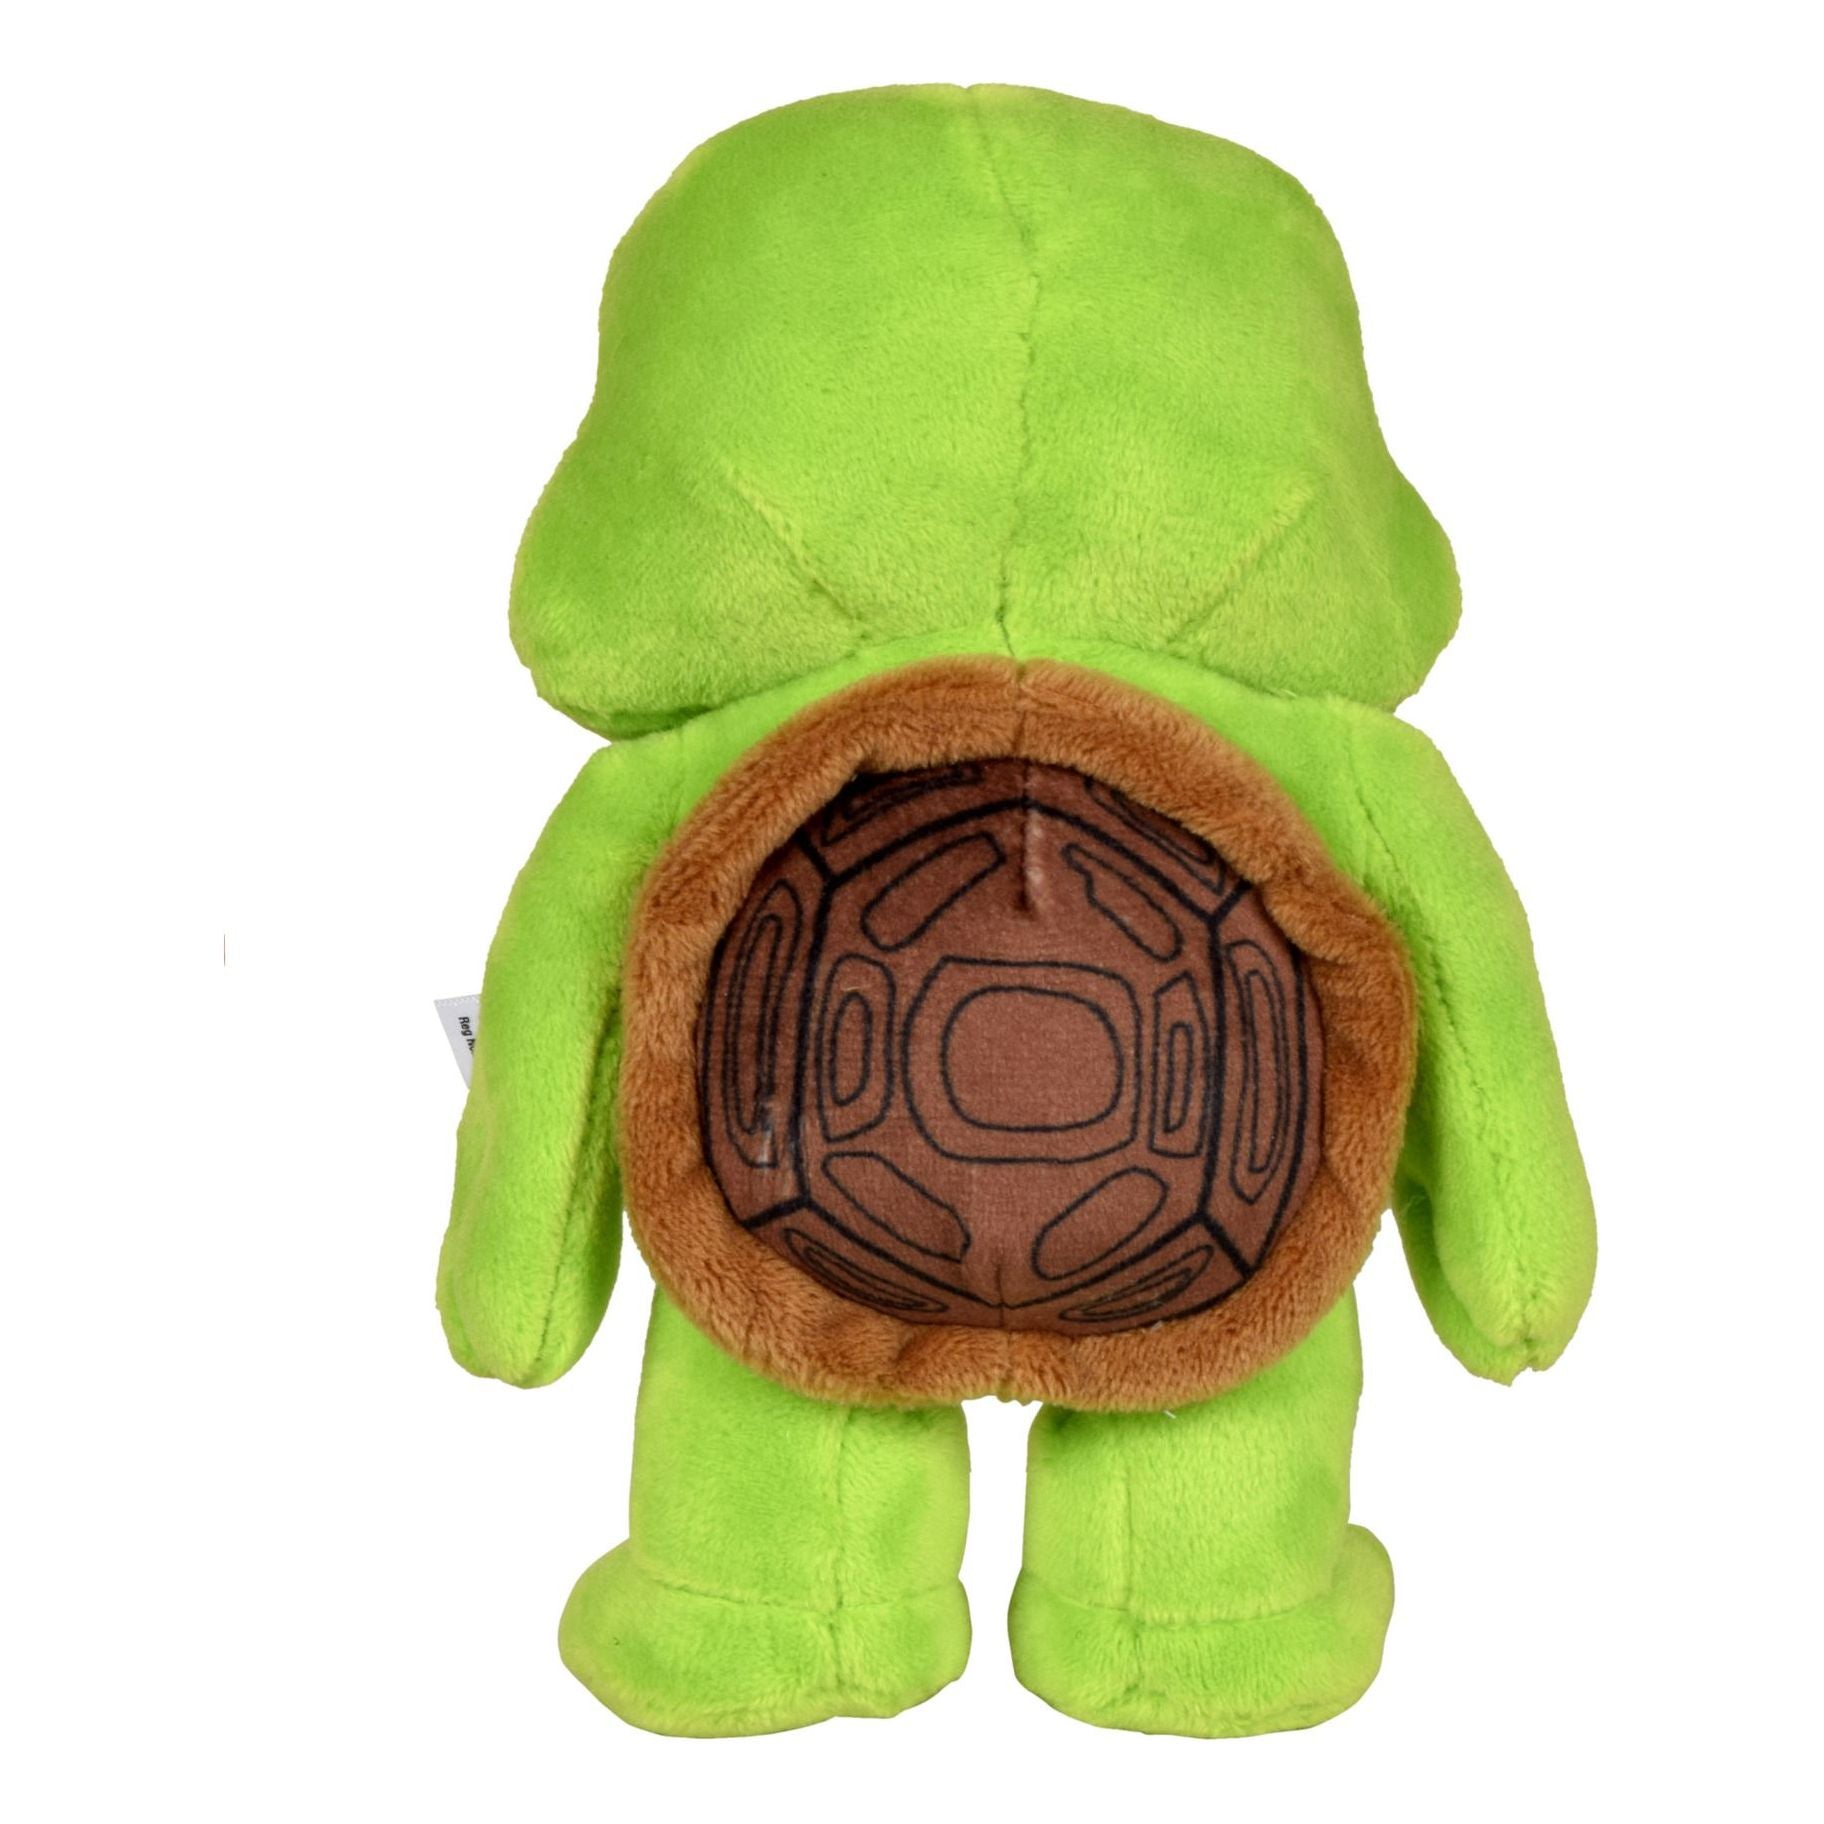 TMNT Movie Basic 6" Plush Leonardo Teenage Mutant Ninja Turtles